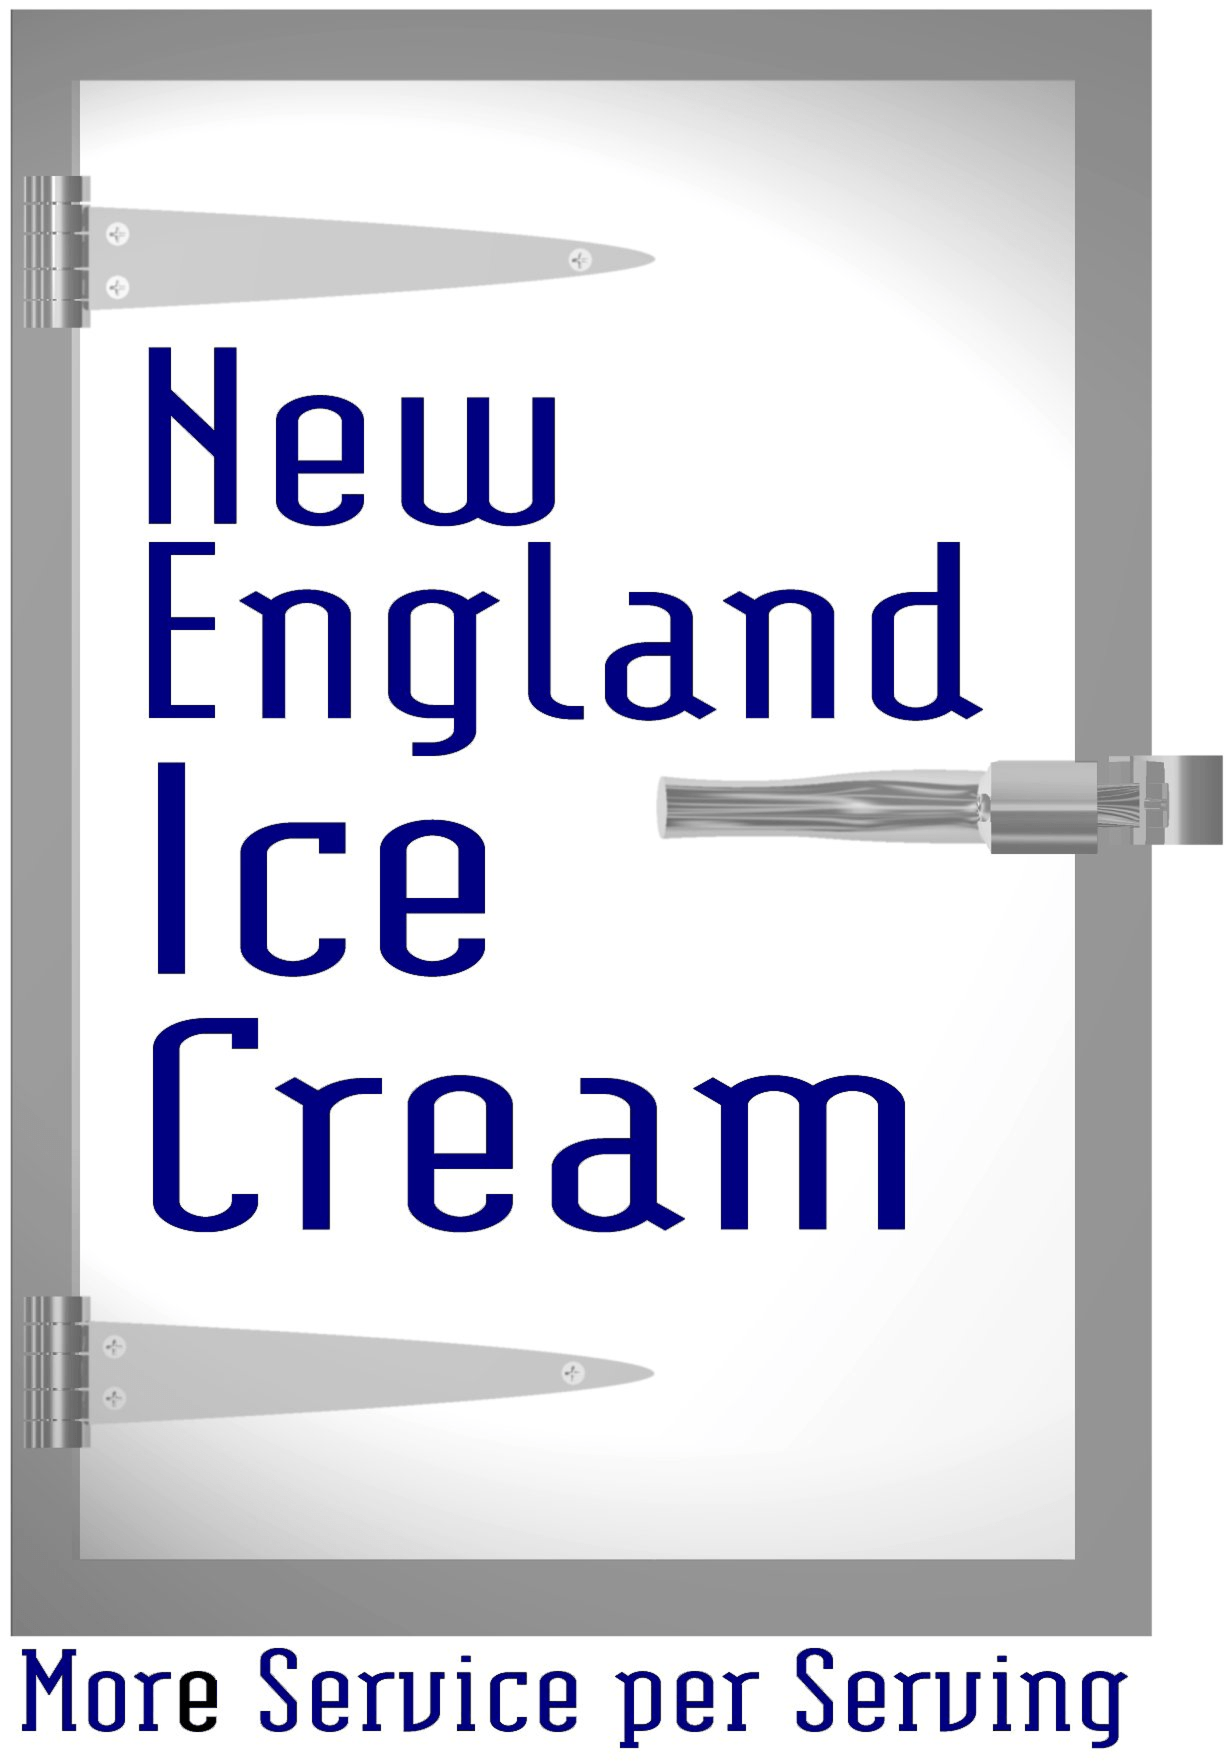 New England Ice Cream